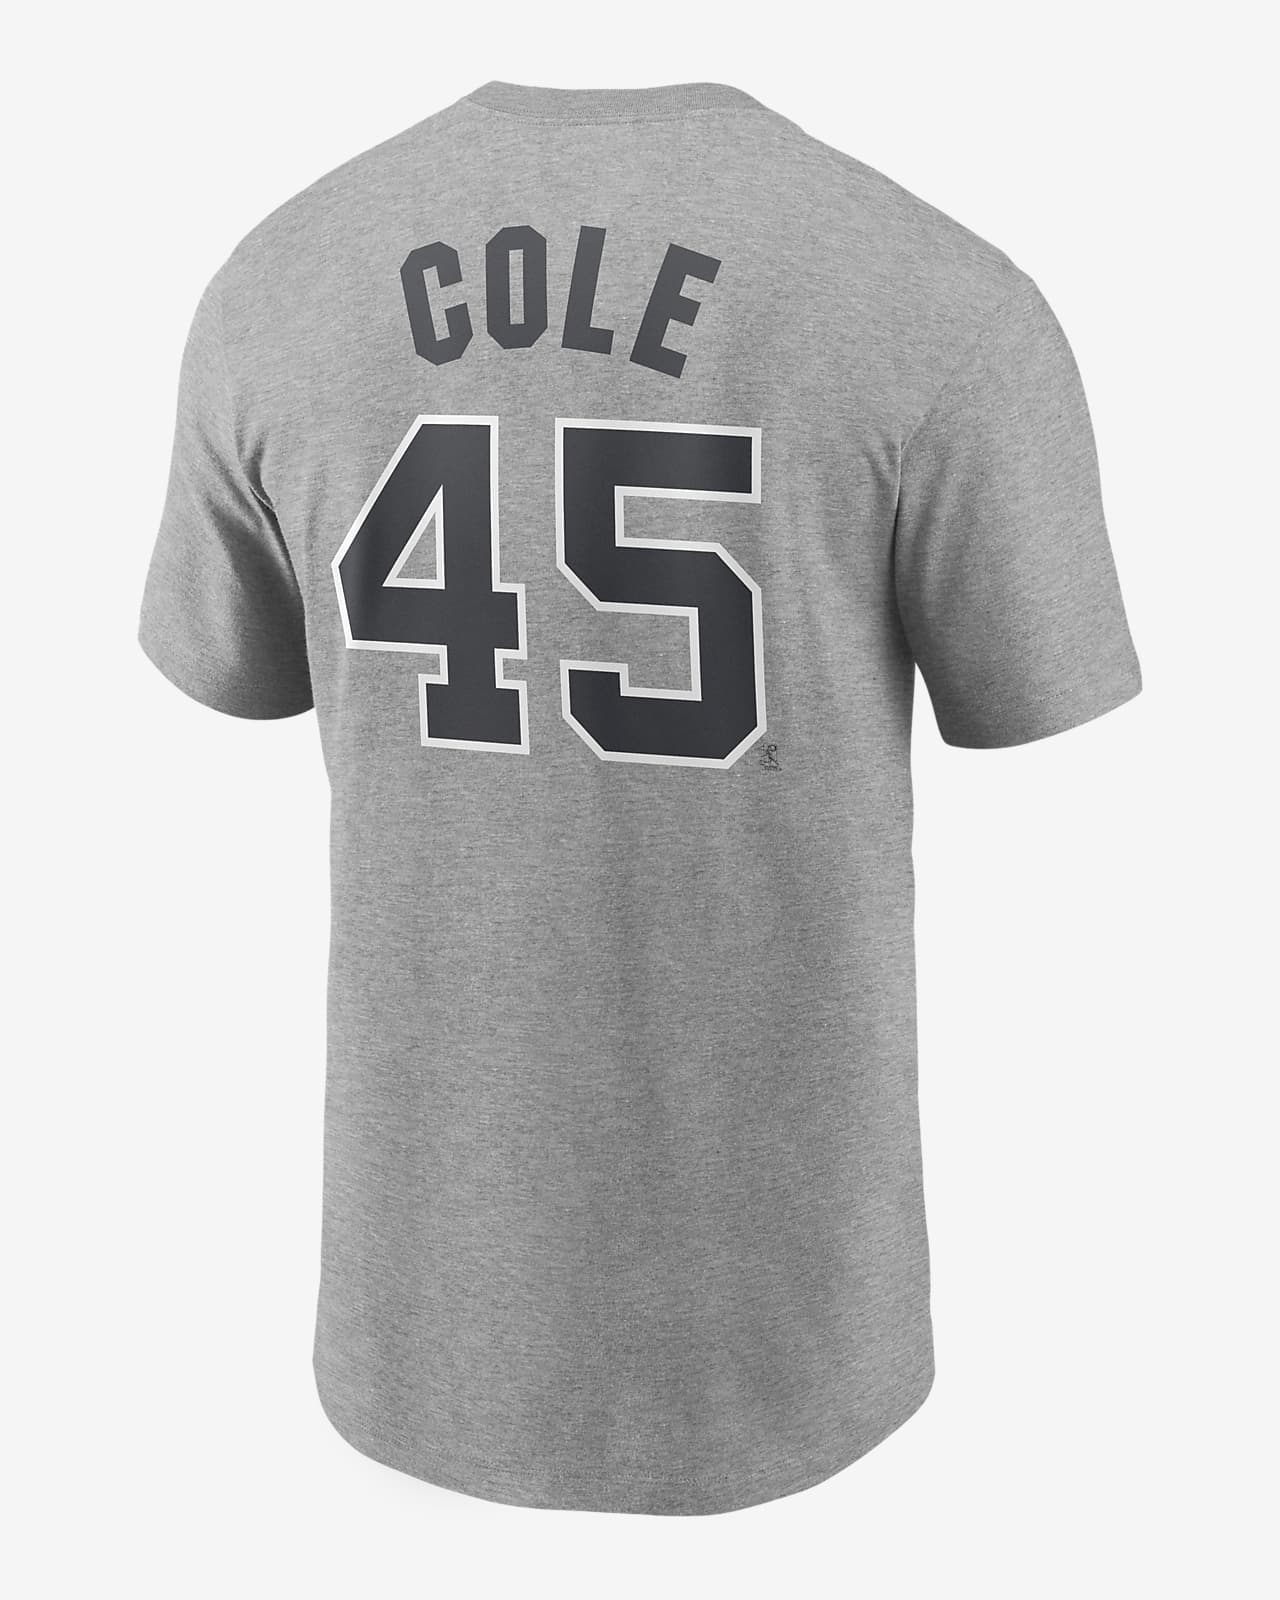 MLB New York Yankees (Gerrit Cole) Men's T-Shirt.